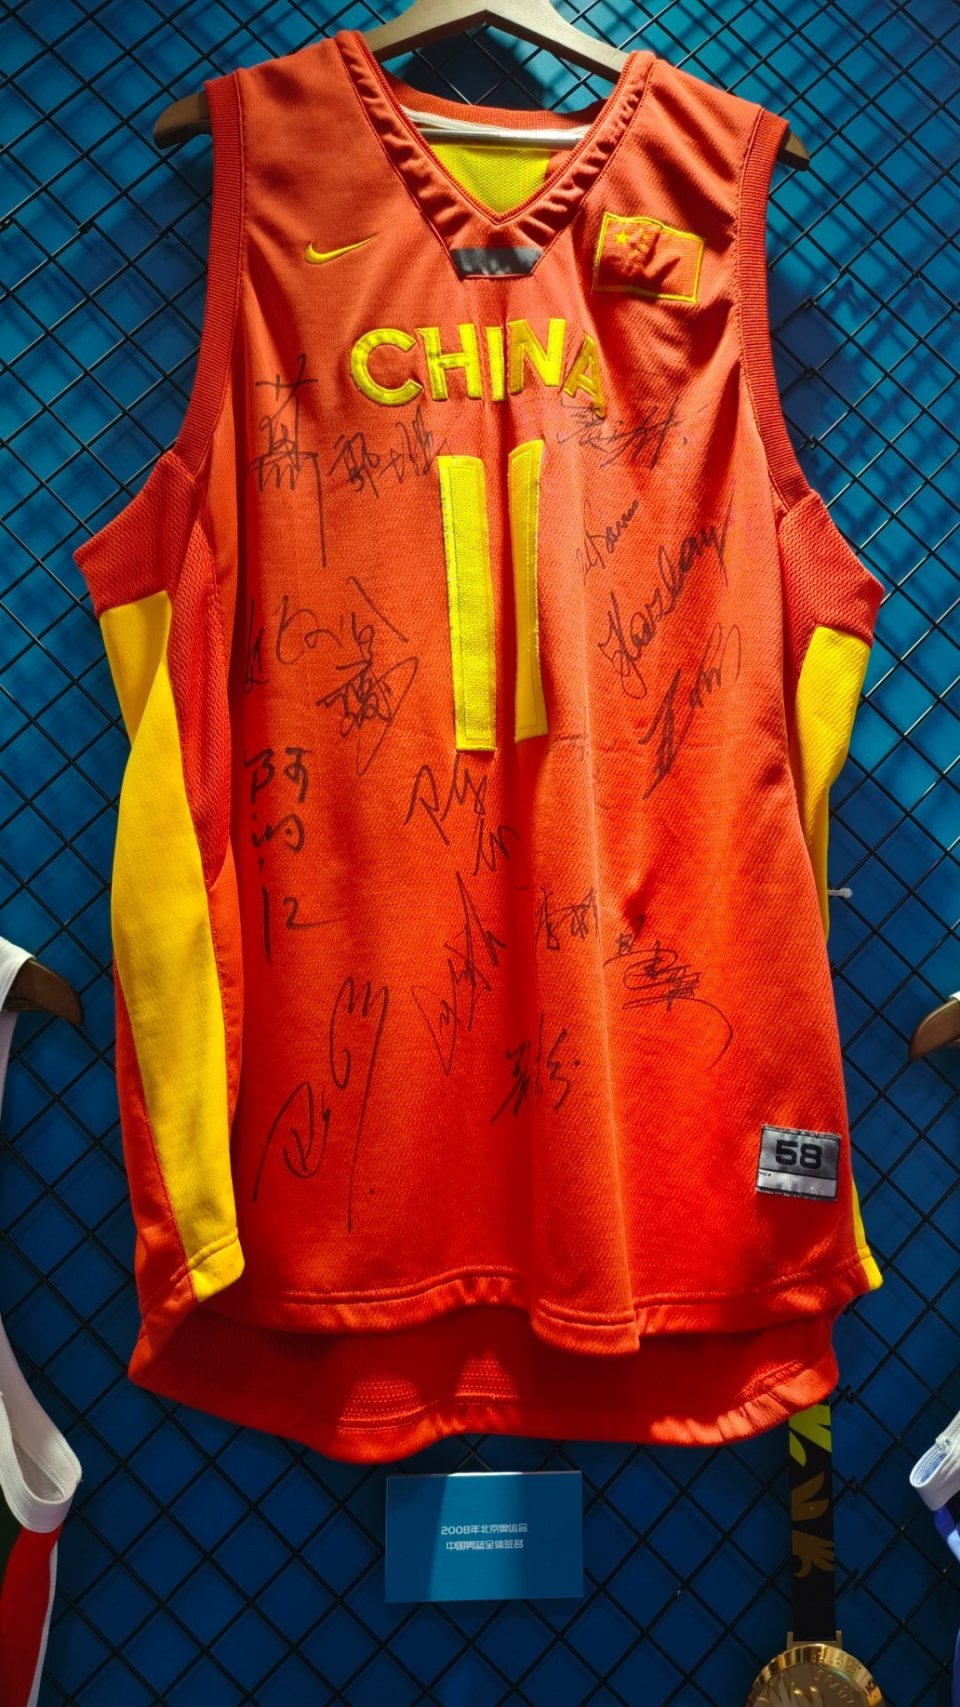 2008北京奥运会中国男篮集体签名球衣!